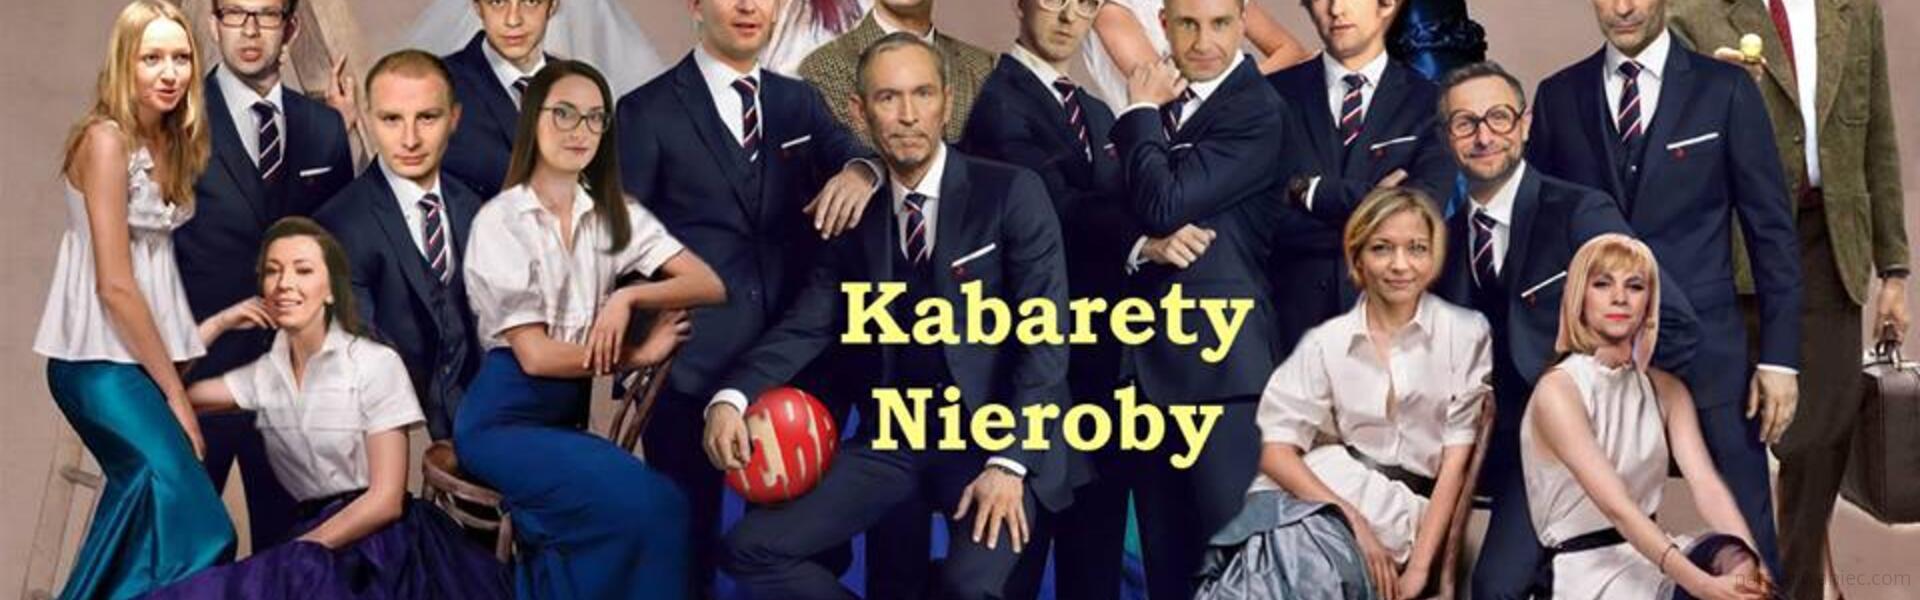 19/07/2018 Kabarety Nieroby - wieczór II - 